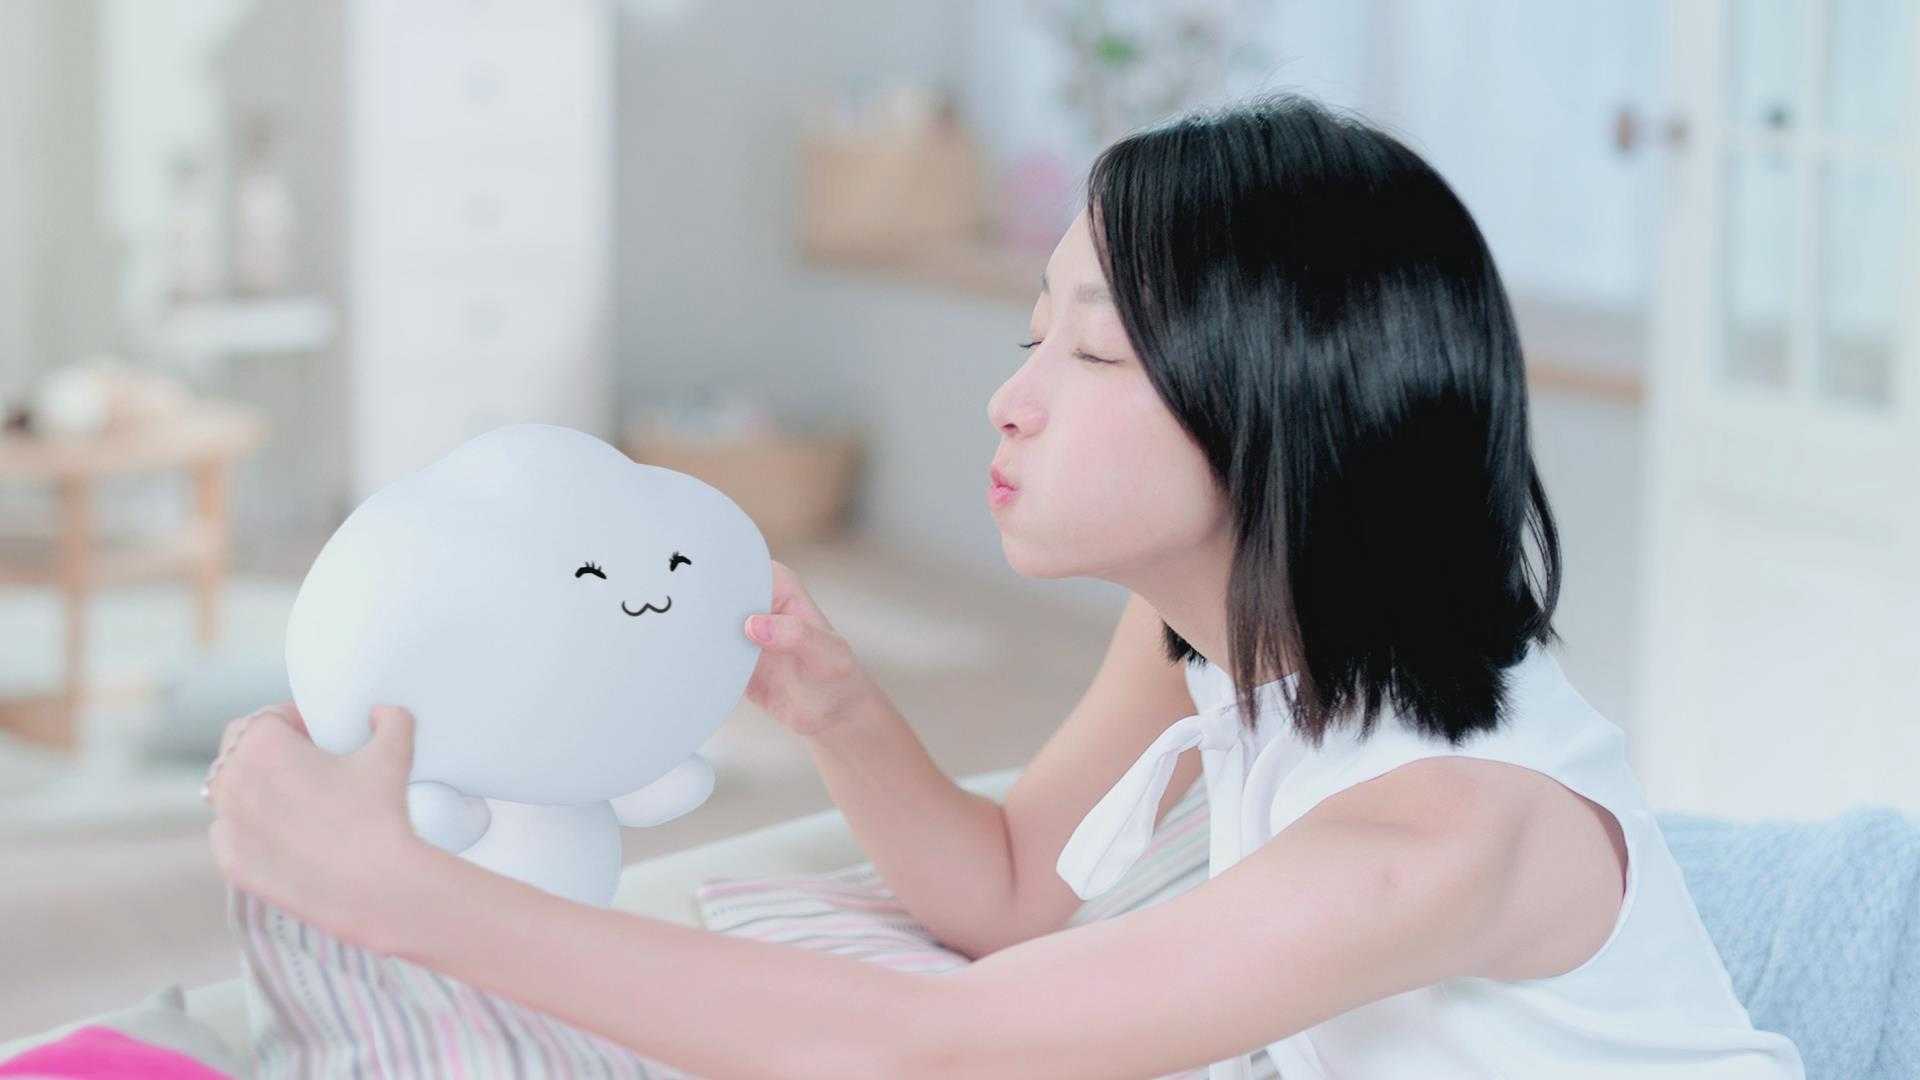 淘淘氧棉卫生巾产品形象广告周冬雨篇